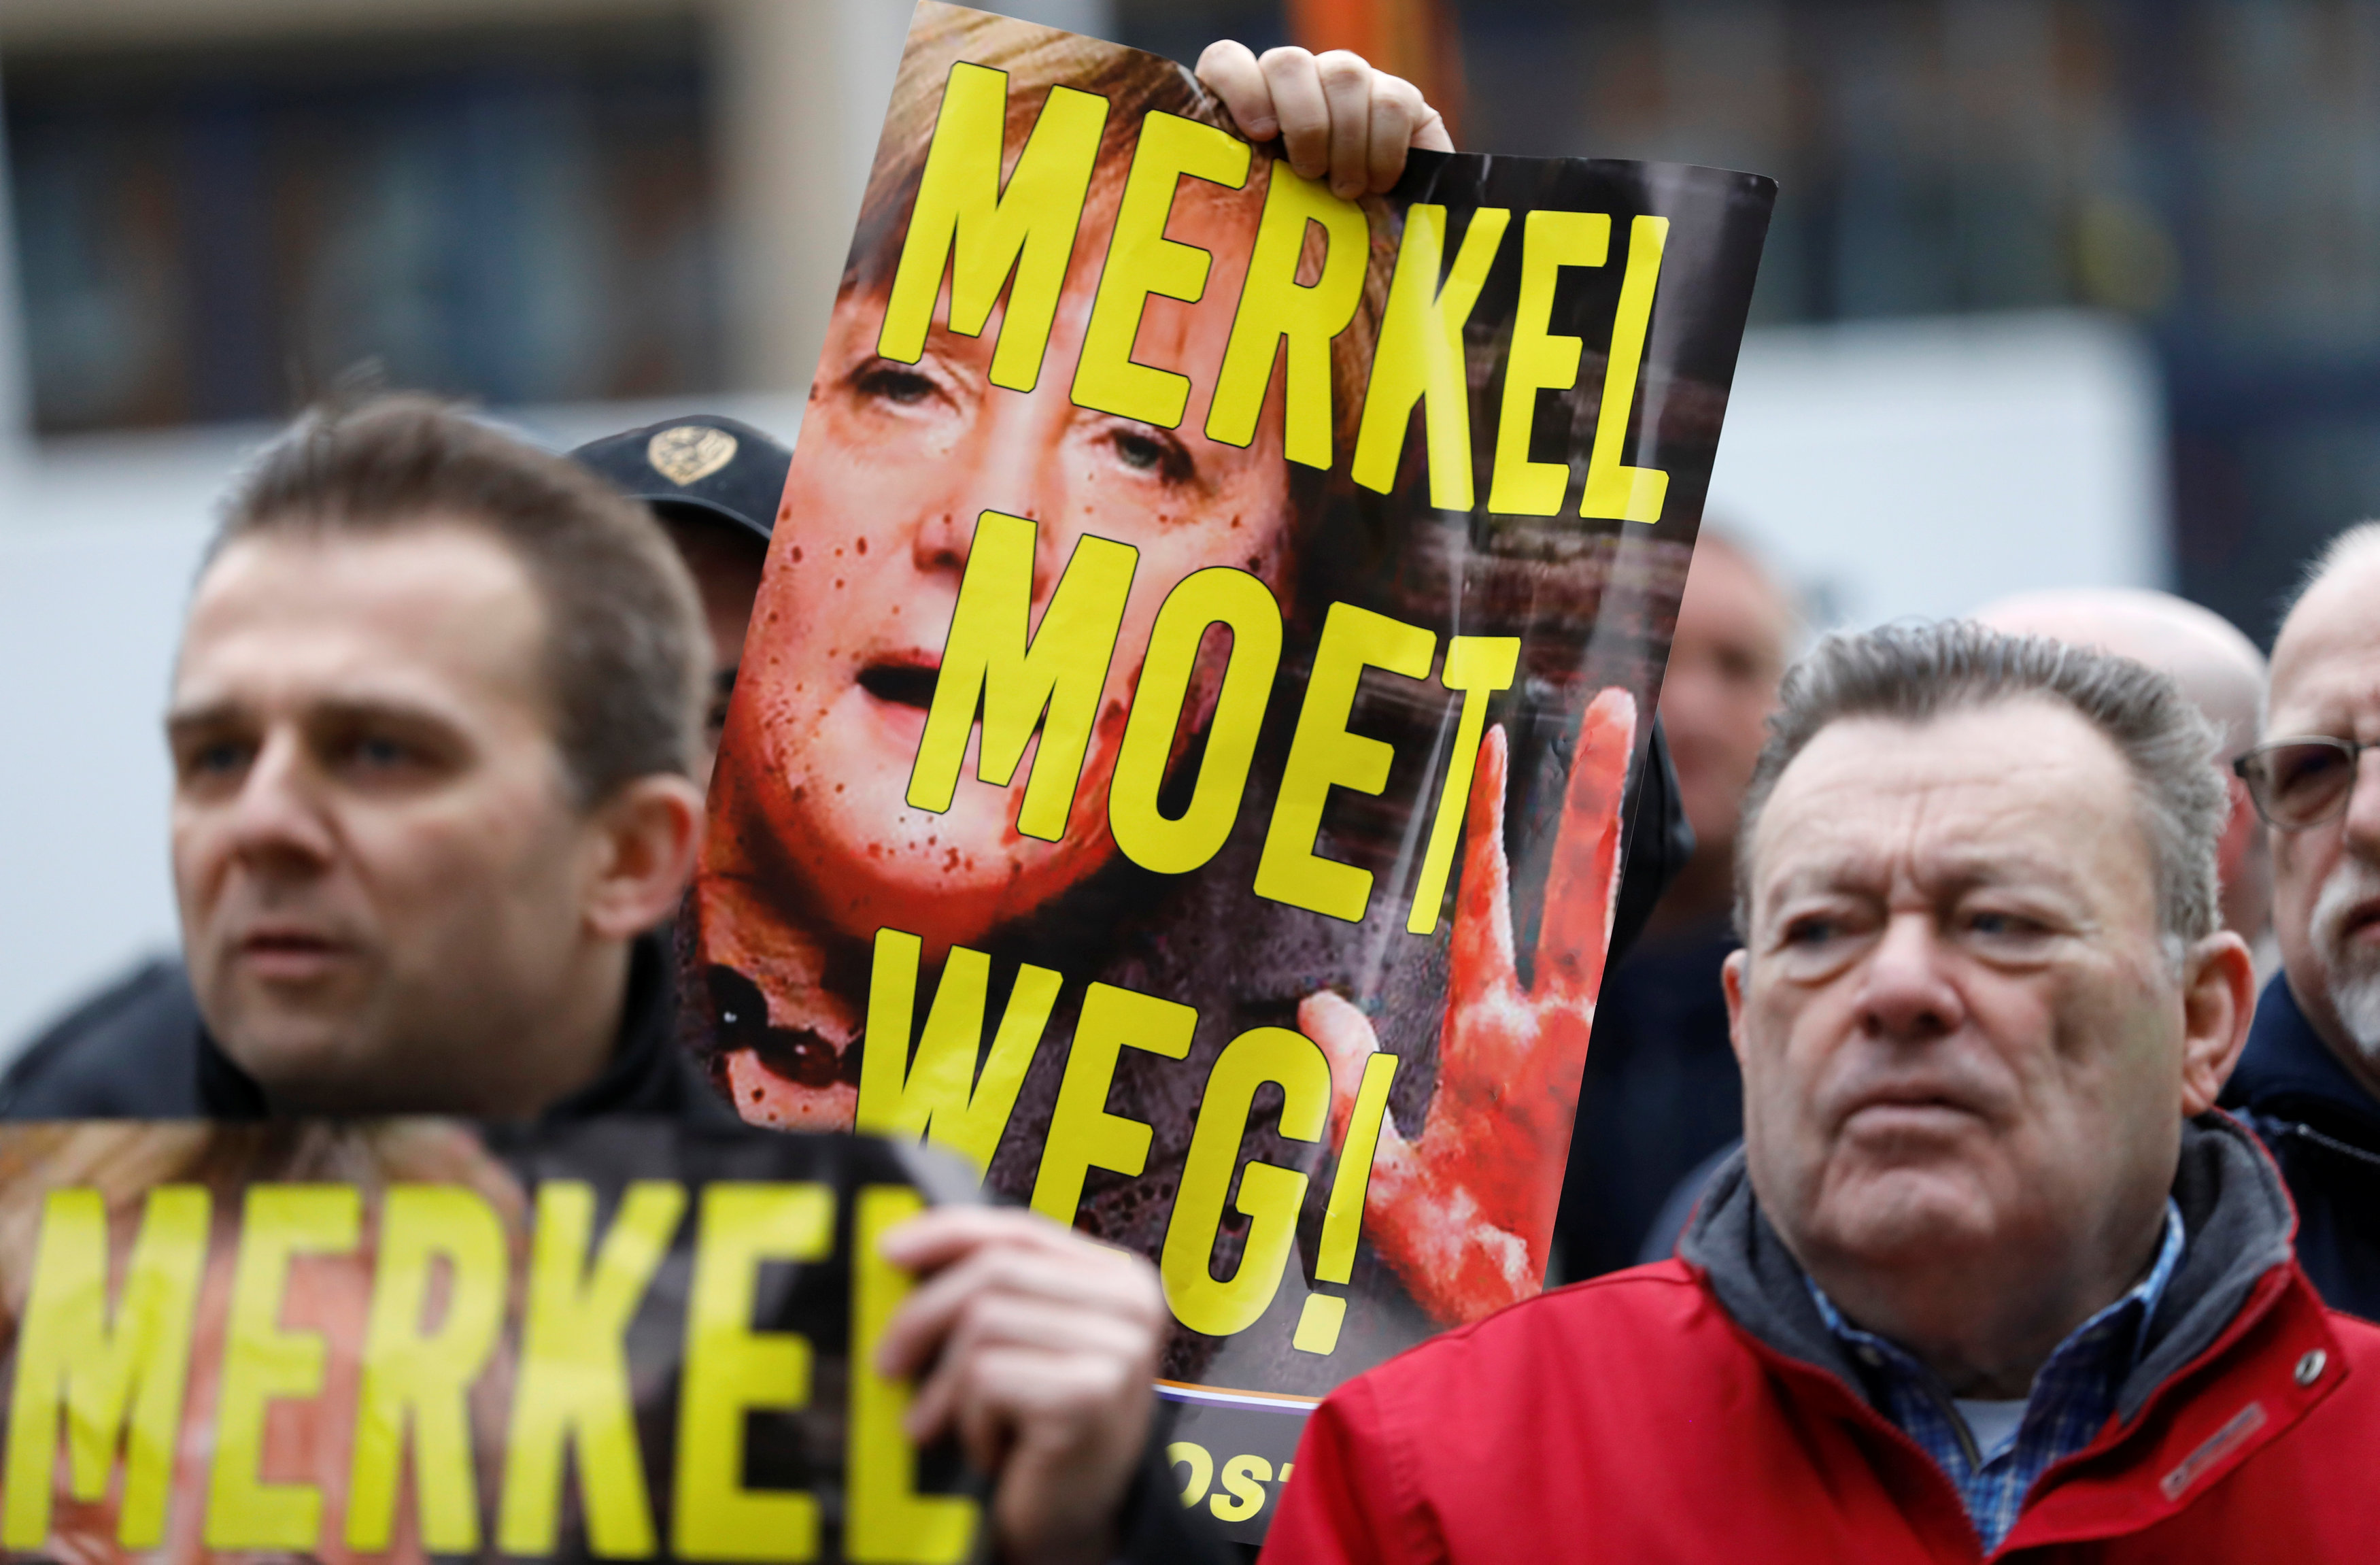 نشطاء اليمين المتطرف فى بروكسل يتظاهرون ضد المستشار الألمانية